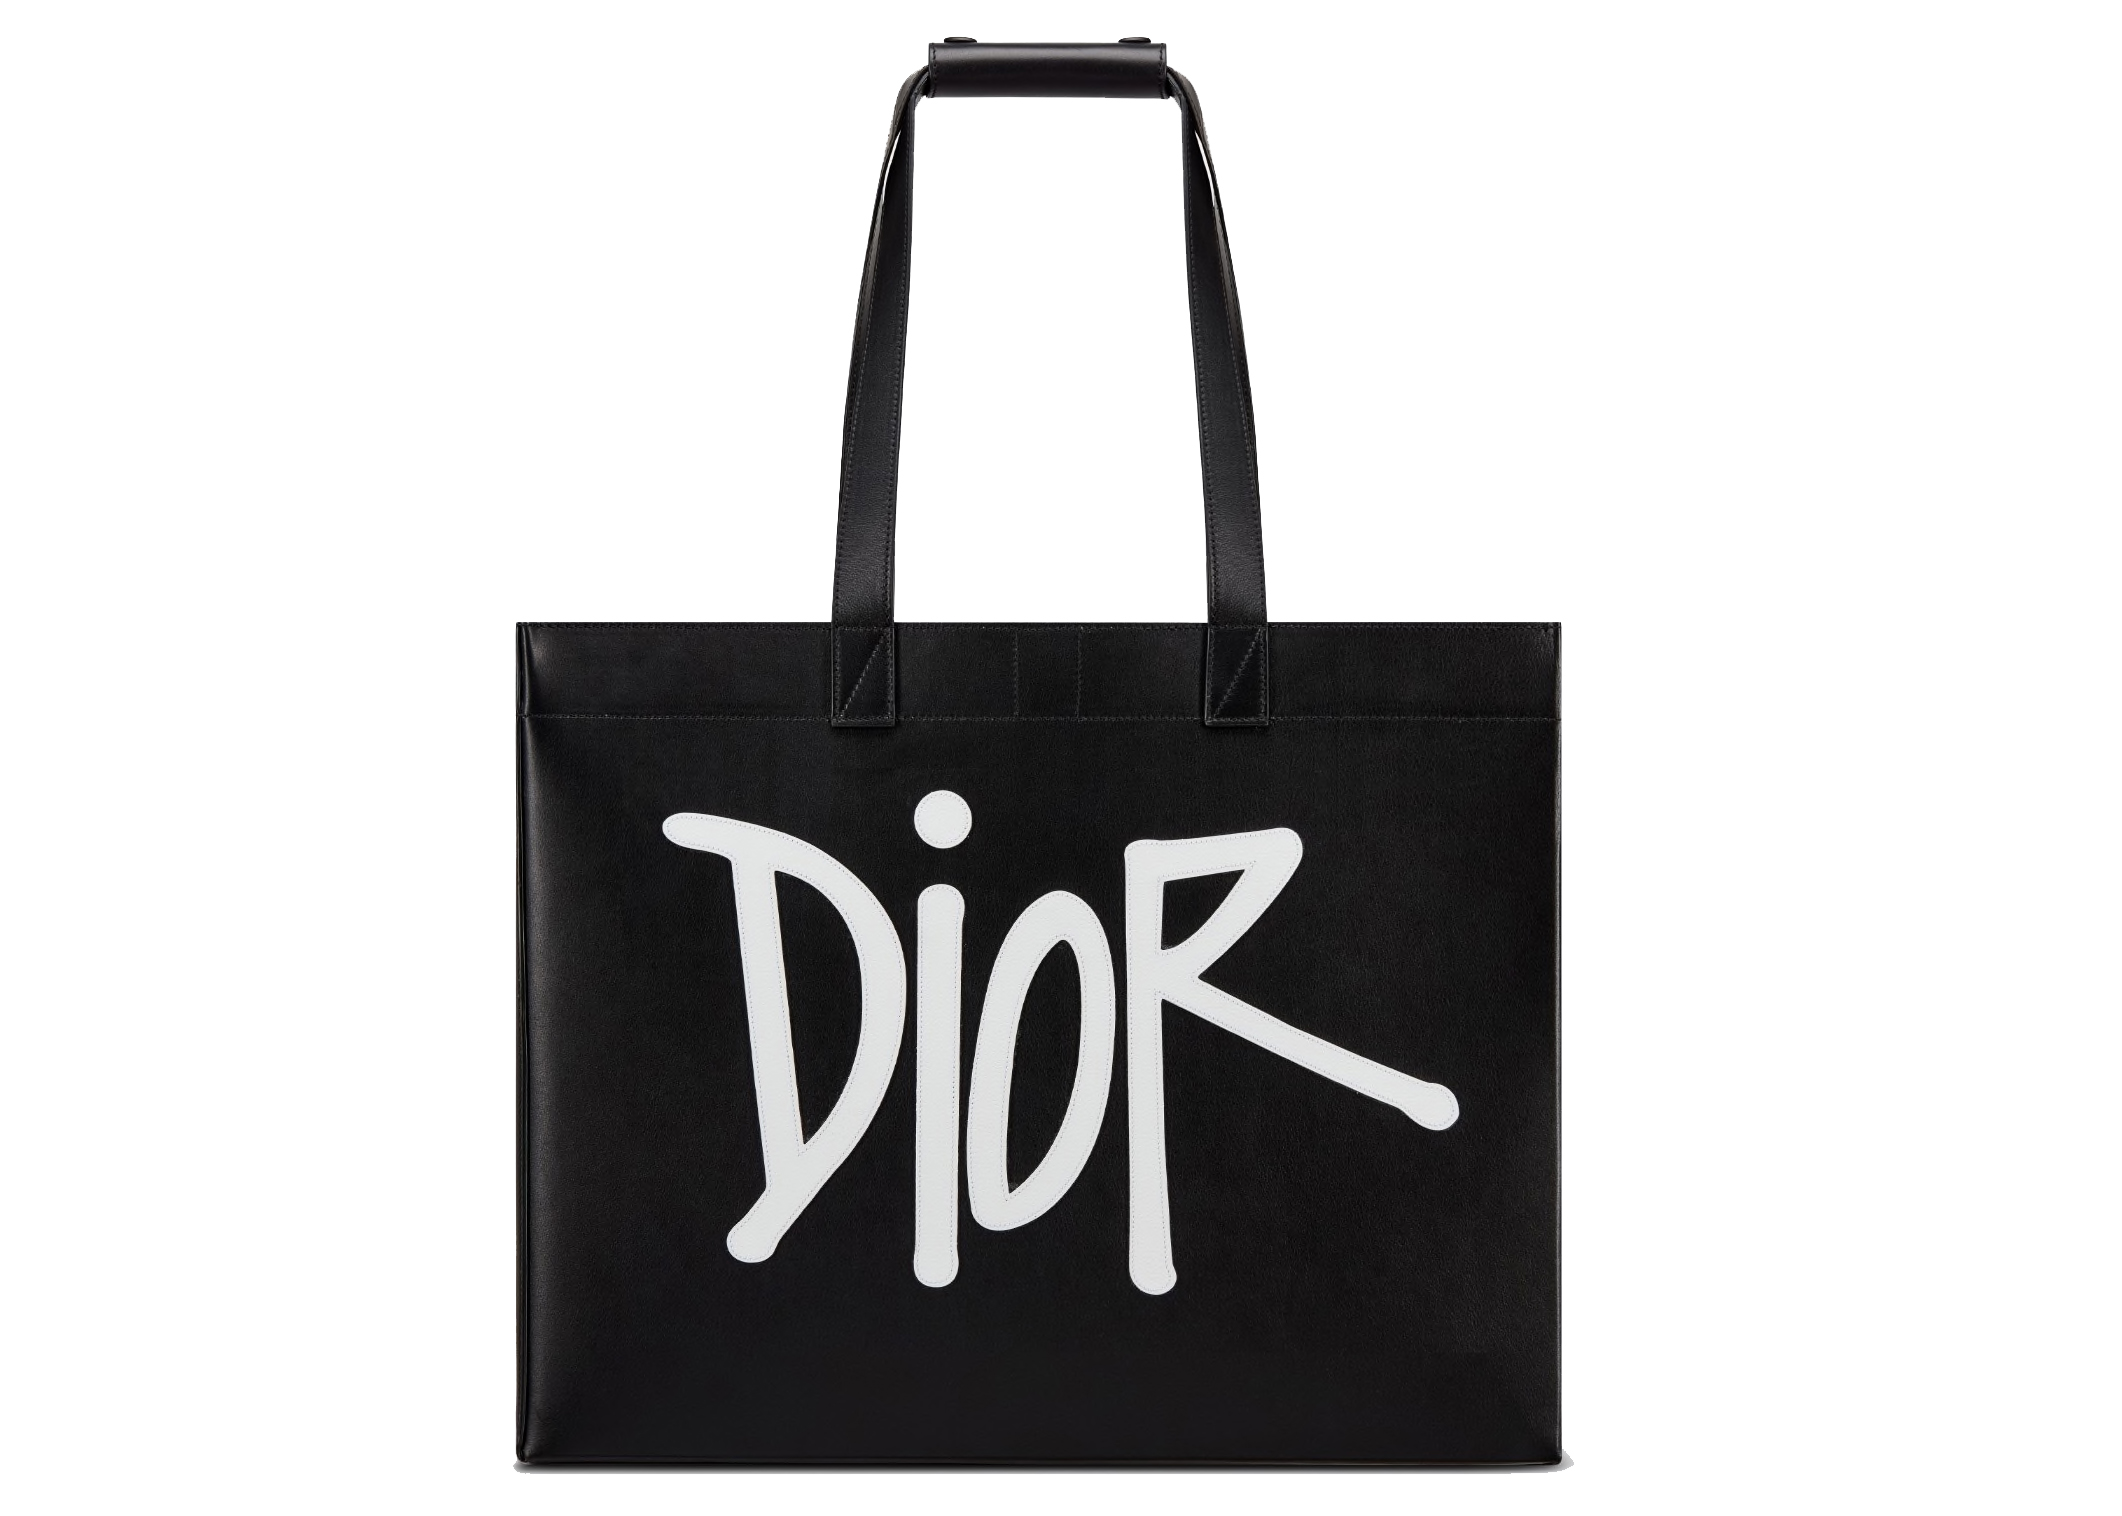 Christian Dior pre-owned Medium Lady Dior Handbag - Farfetch